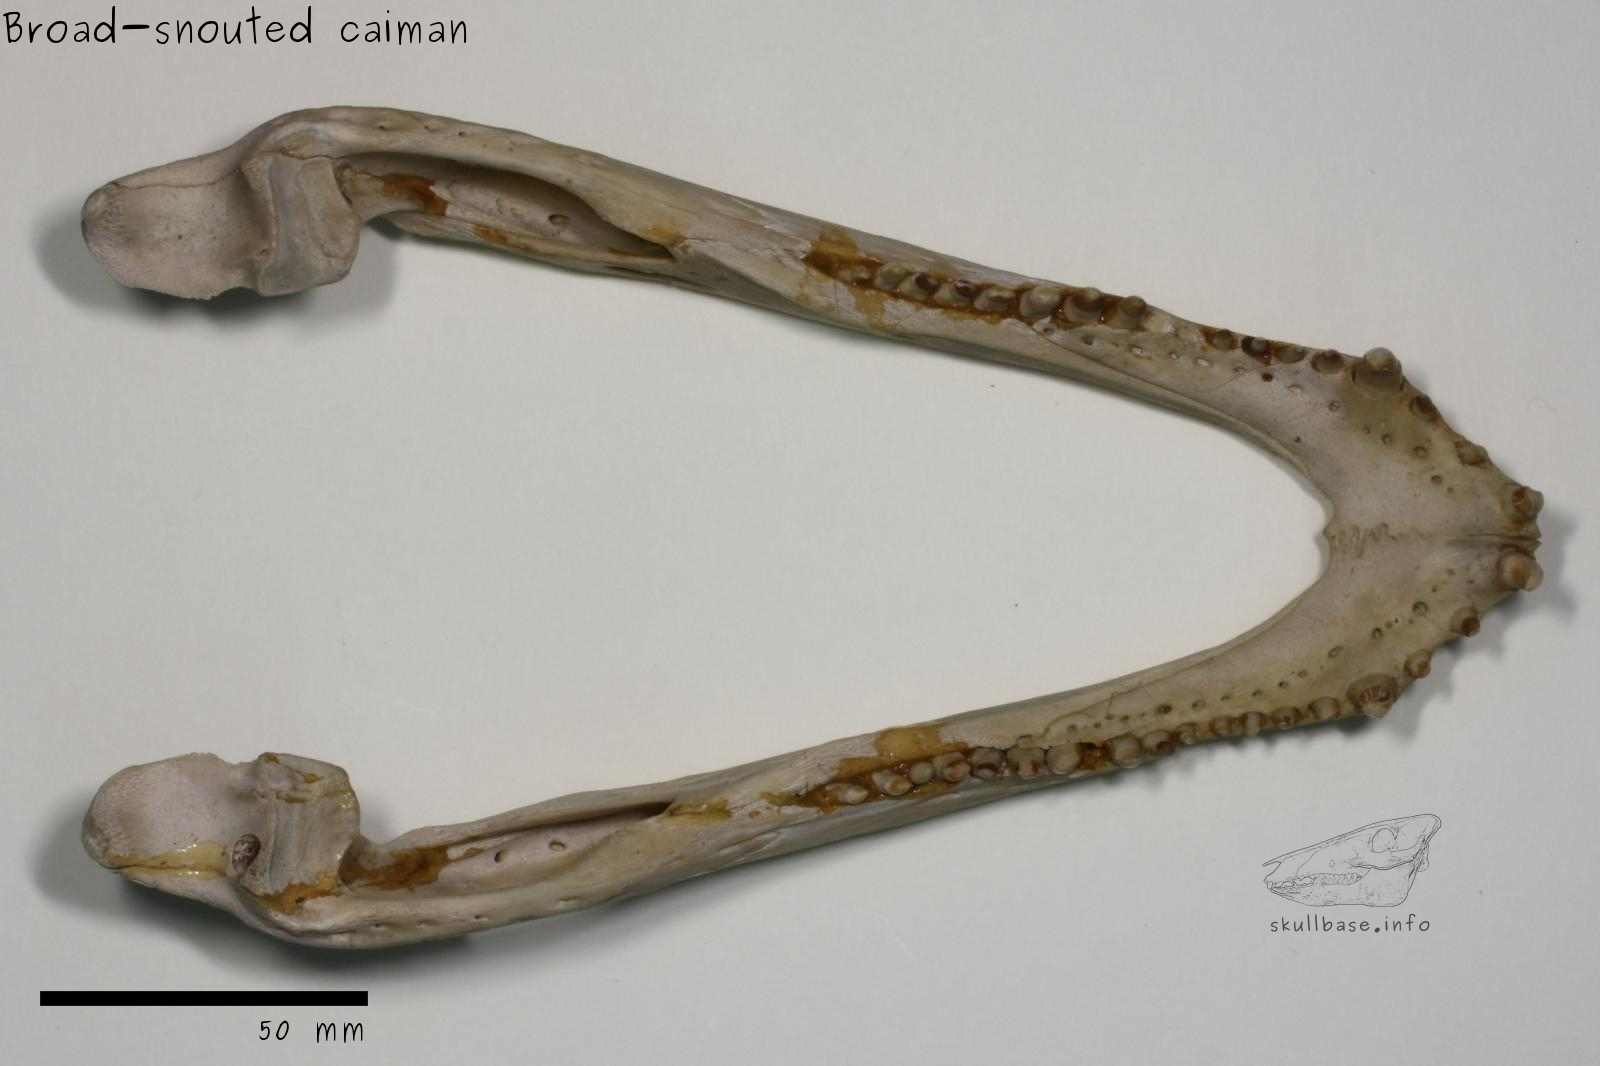 Broad-snouted caiman (Caiman latirostris) jaw